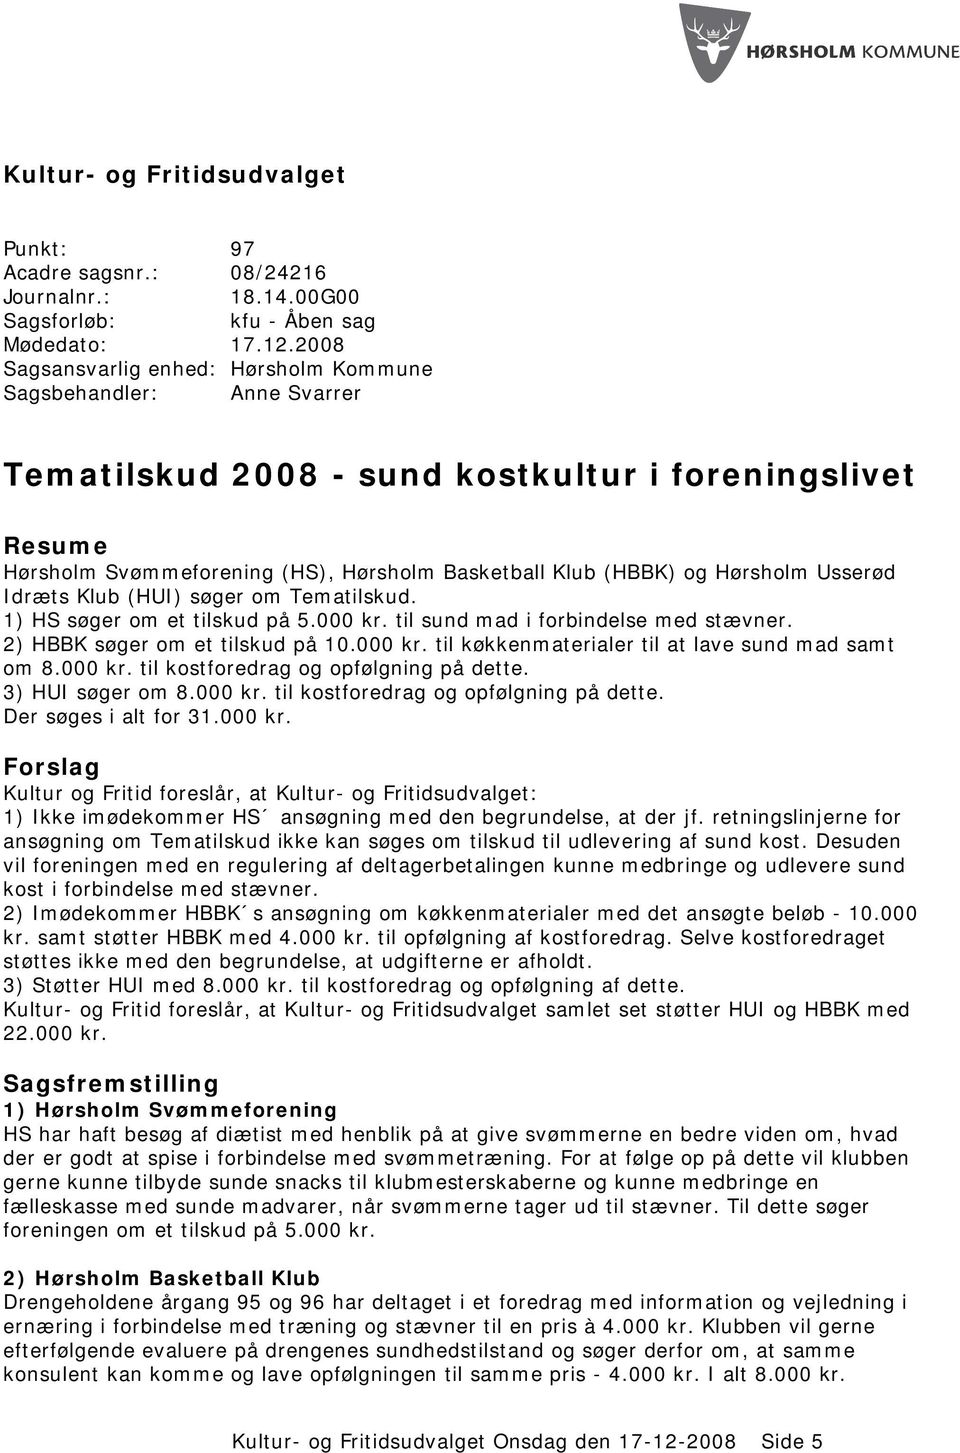 Hørsholm Usserød Idræts Klub (HUI) søger om Tematilskud. 1) HS søger om et tilskud på 5.000 kr. til sund mad i forbindelse med stævner. 2) HBBK søger om et tilskud på 10.000 kr. til køkkenmaterialer til at lave sund mad samt om 8.